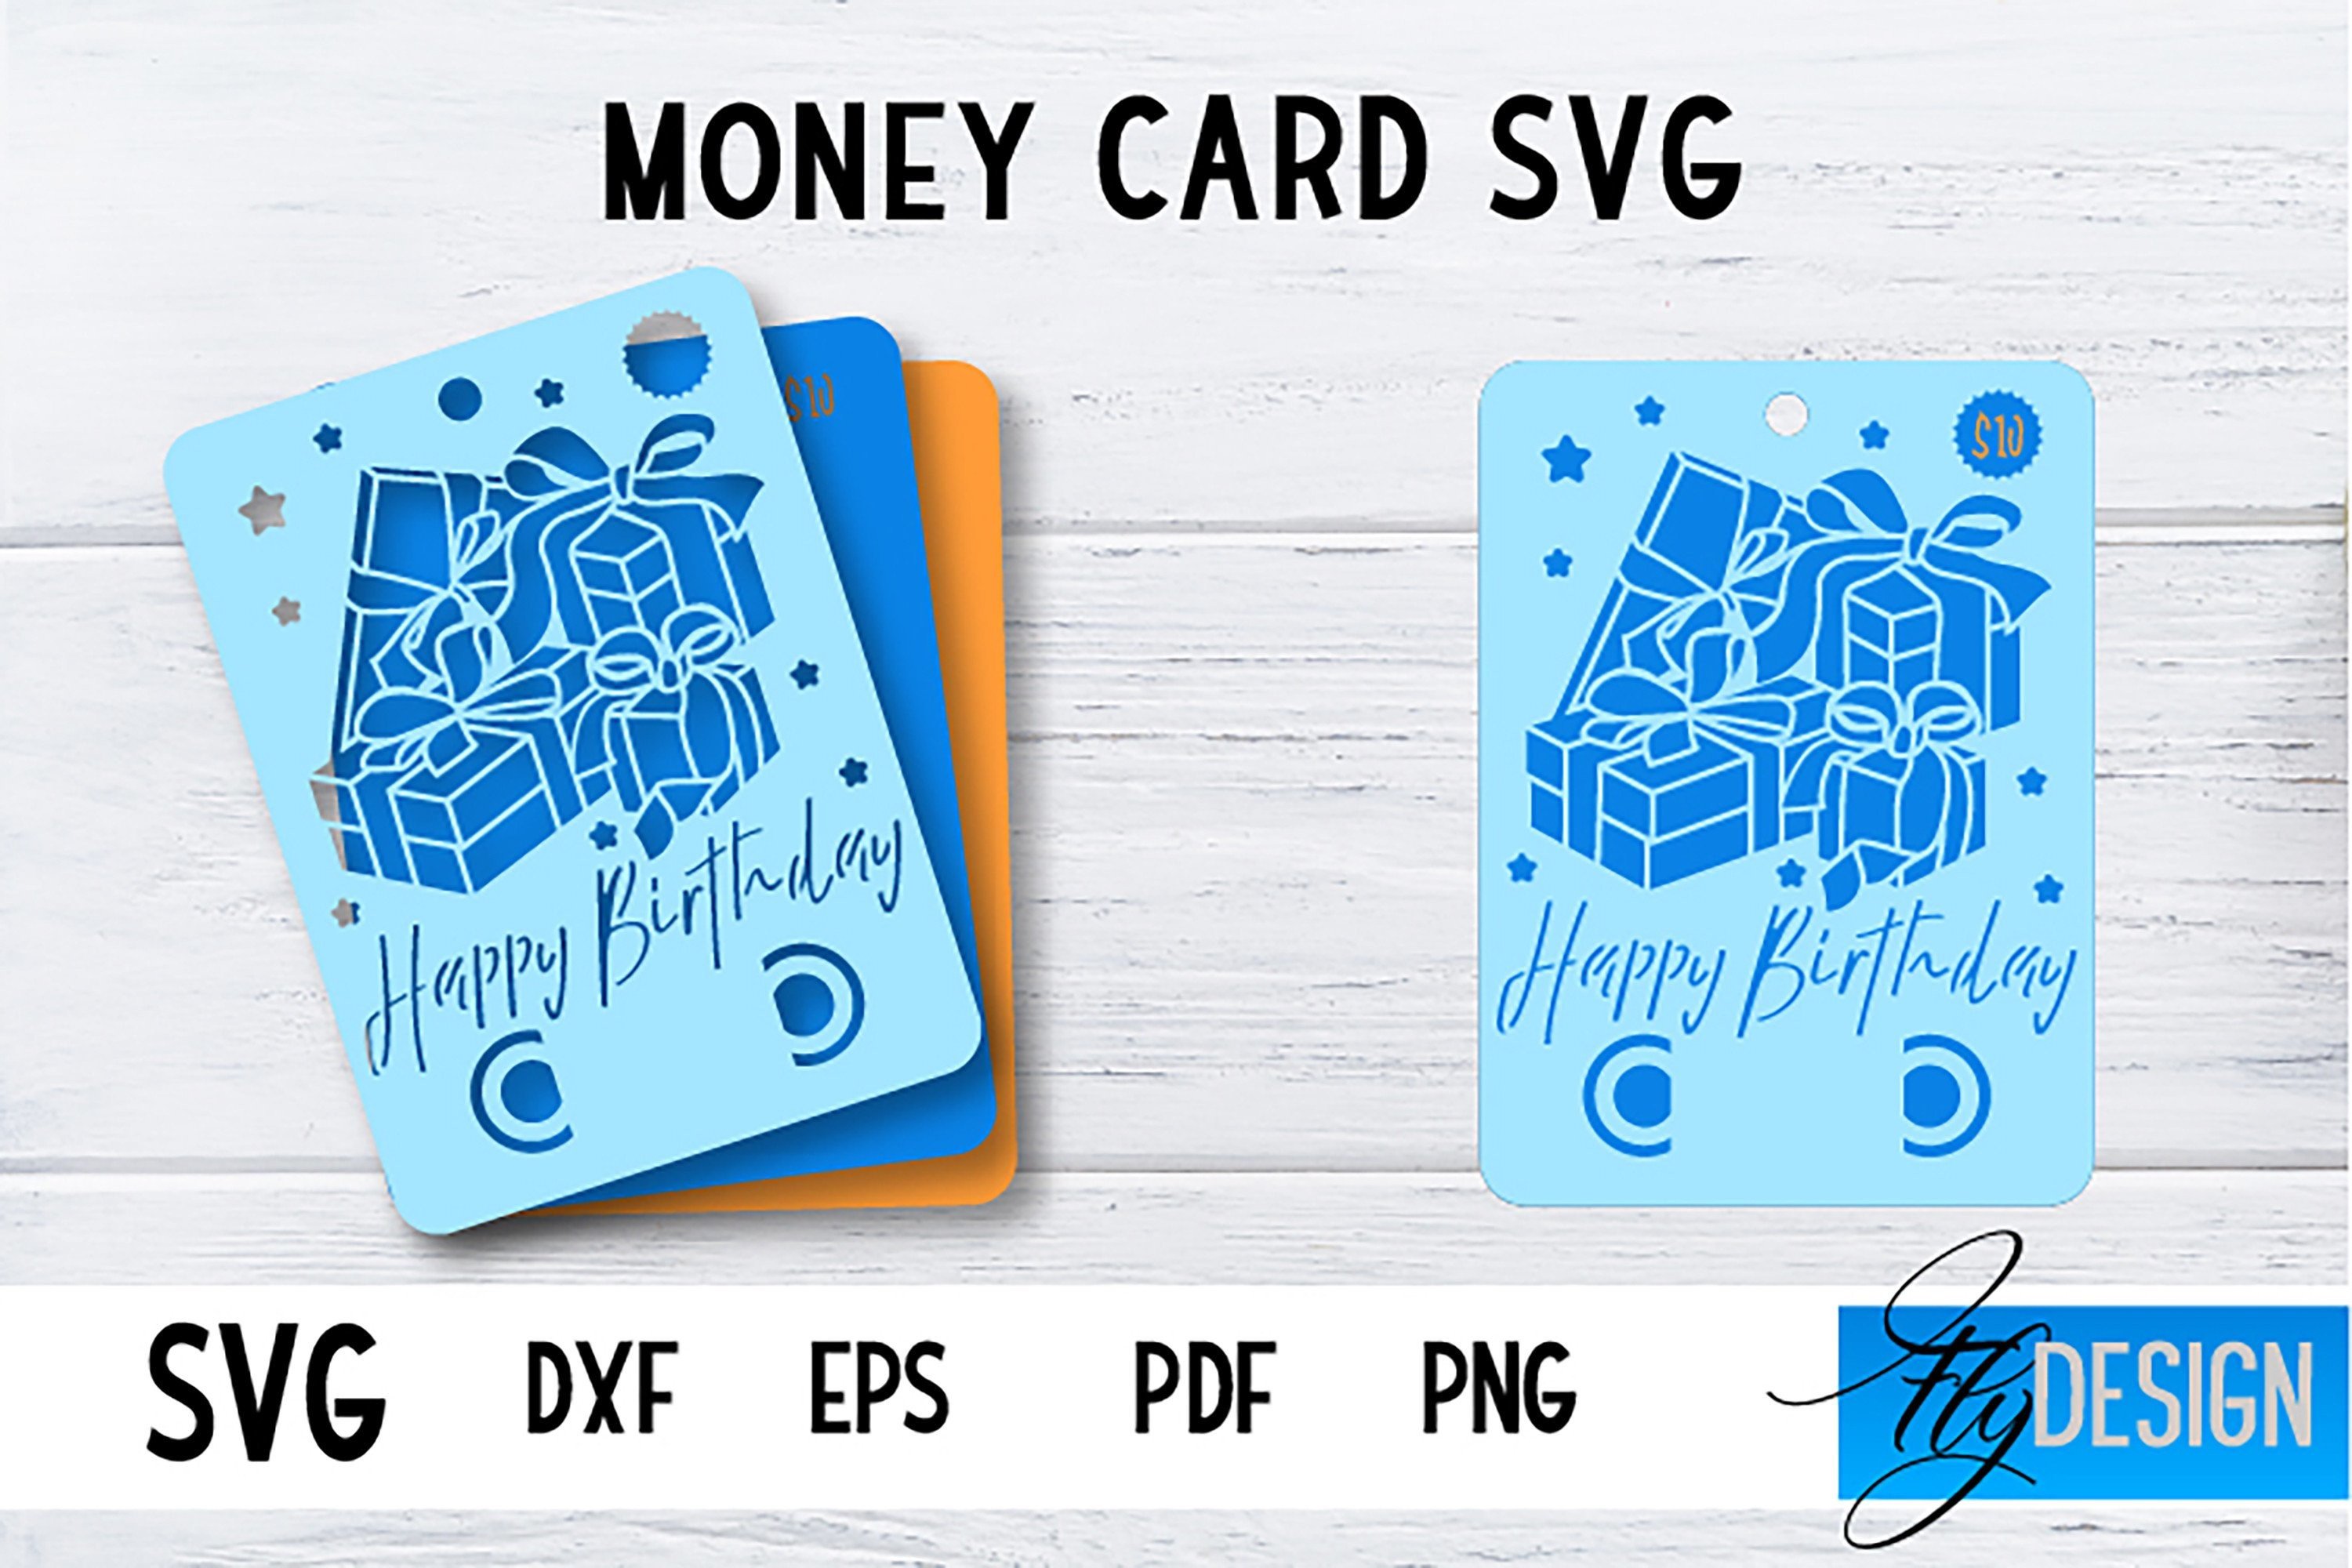 Money Card SVG | Happy Birthday Money Graphic by flydesignsvg ...